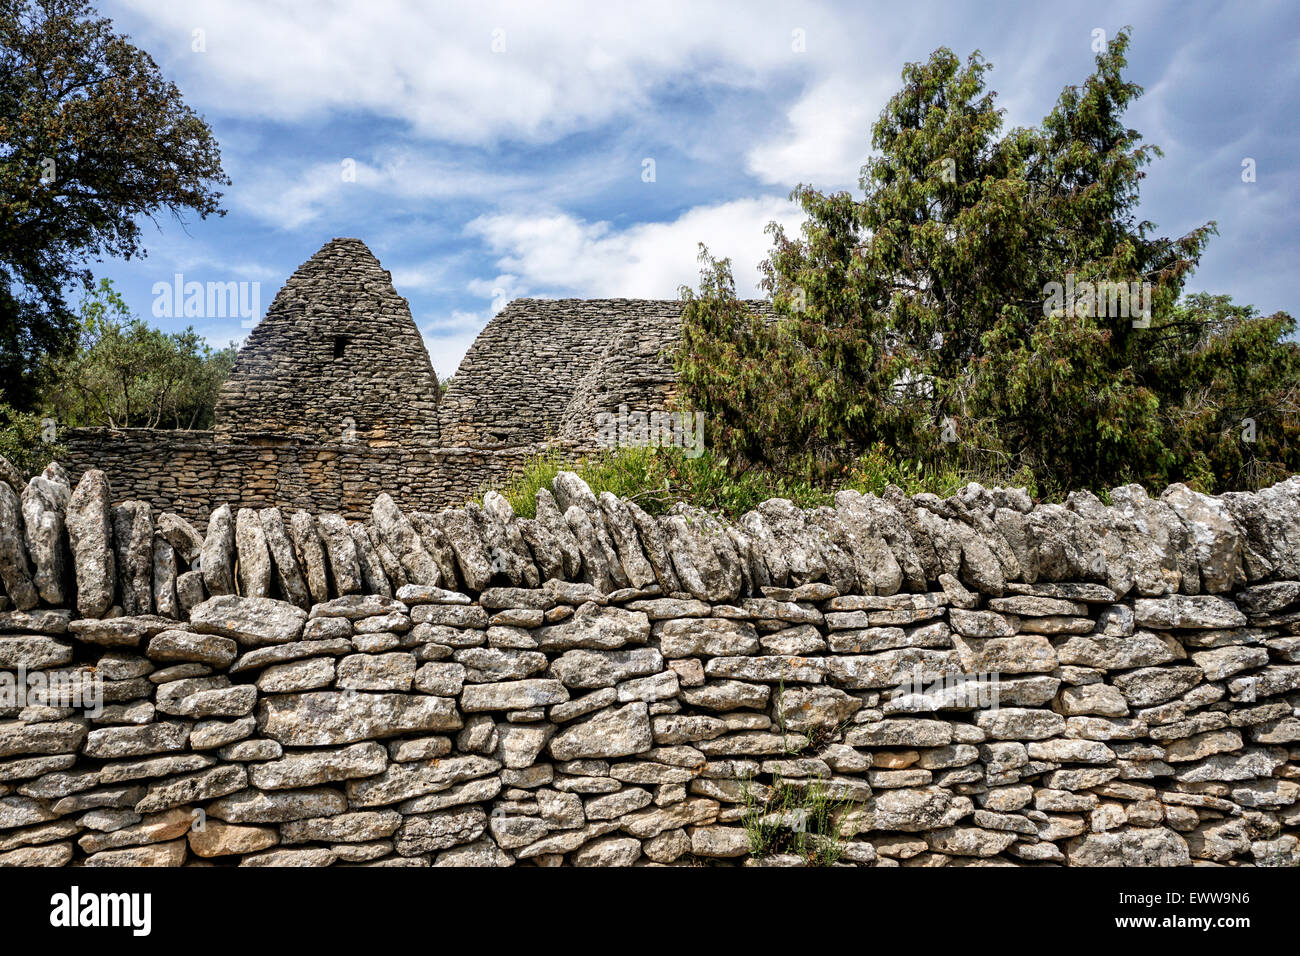 Stone Hut, Le Village des Bories, Open Air Museum near Gordes, Provence, France Stock Photo